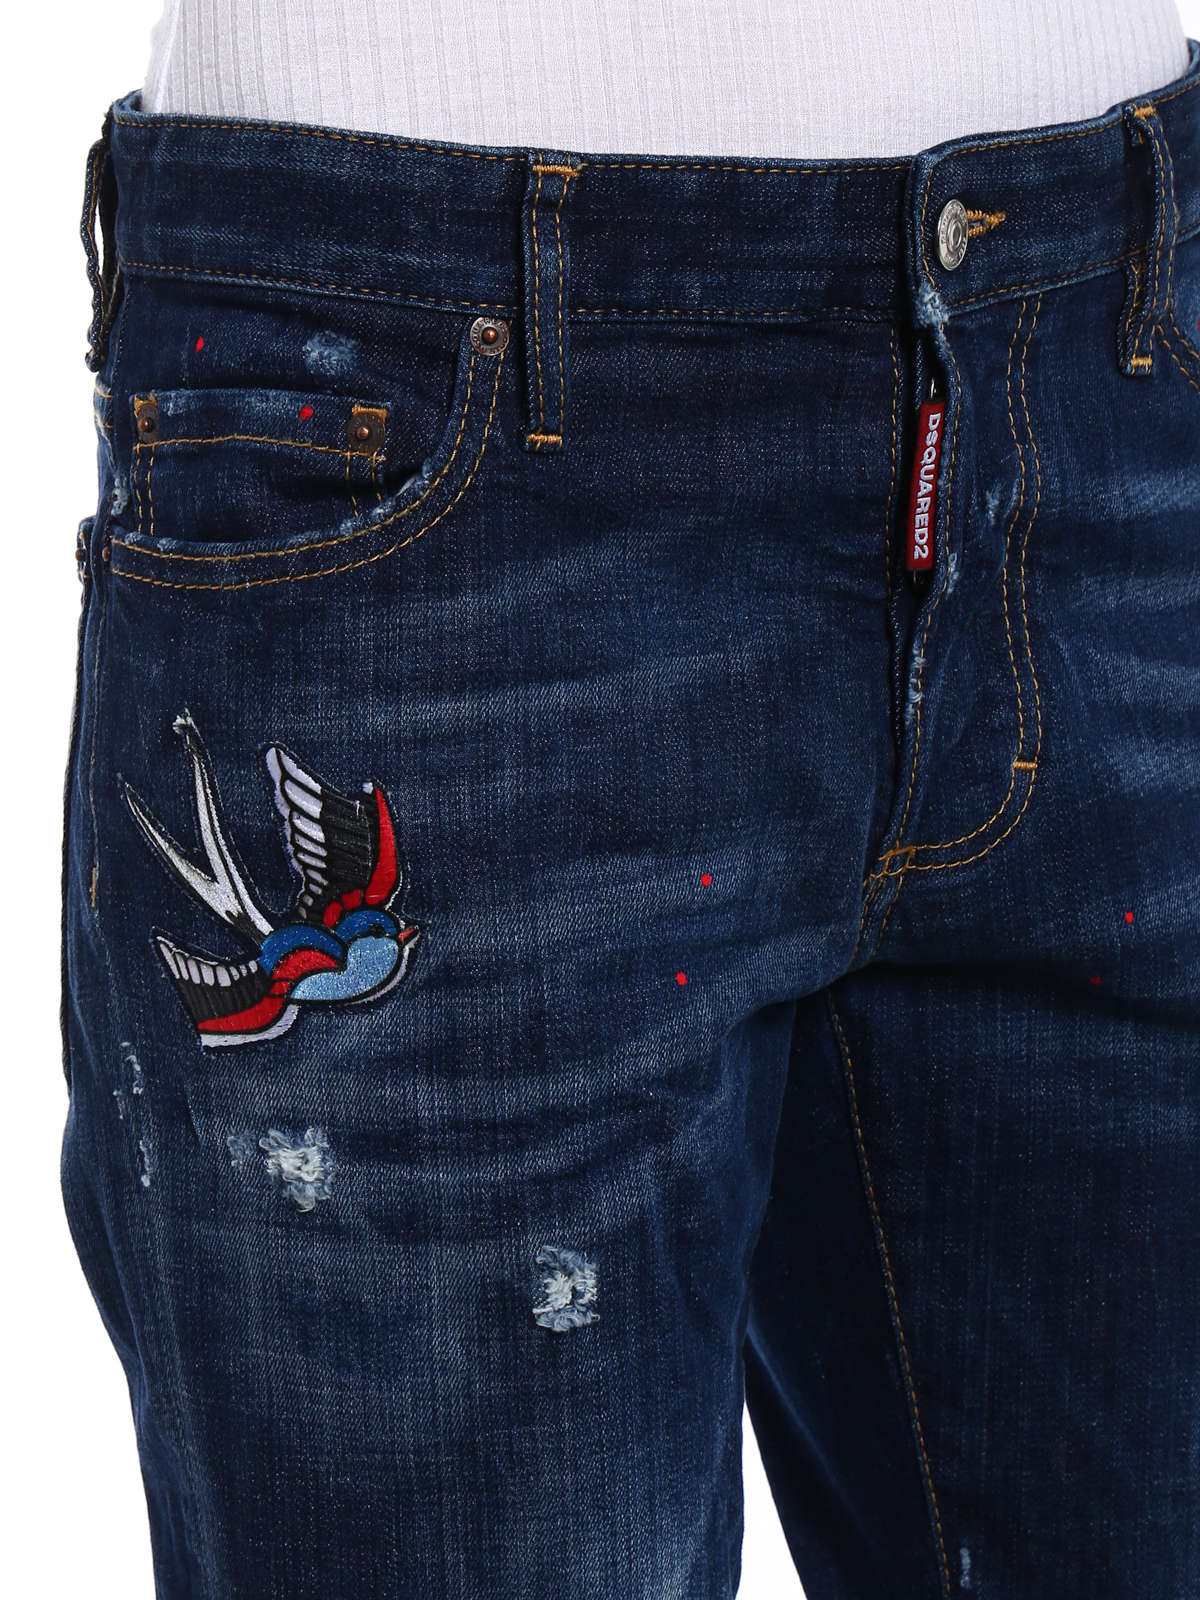 klem Danser Lijkt op Straight leg jeans Dsquared2 - Boyfriend bird patches jeans -  S75LA0994S30342470